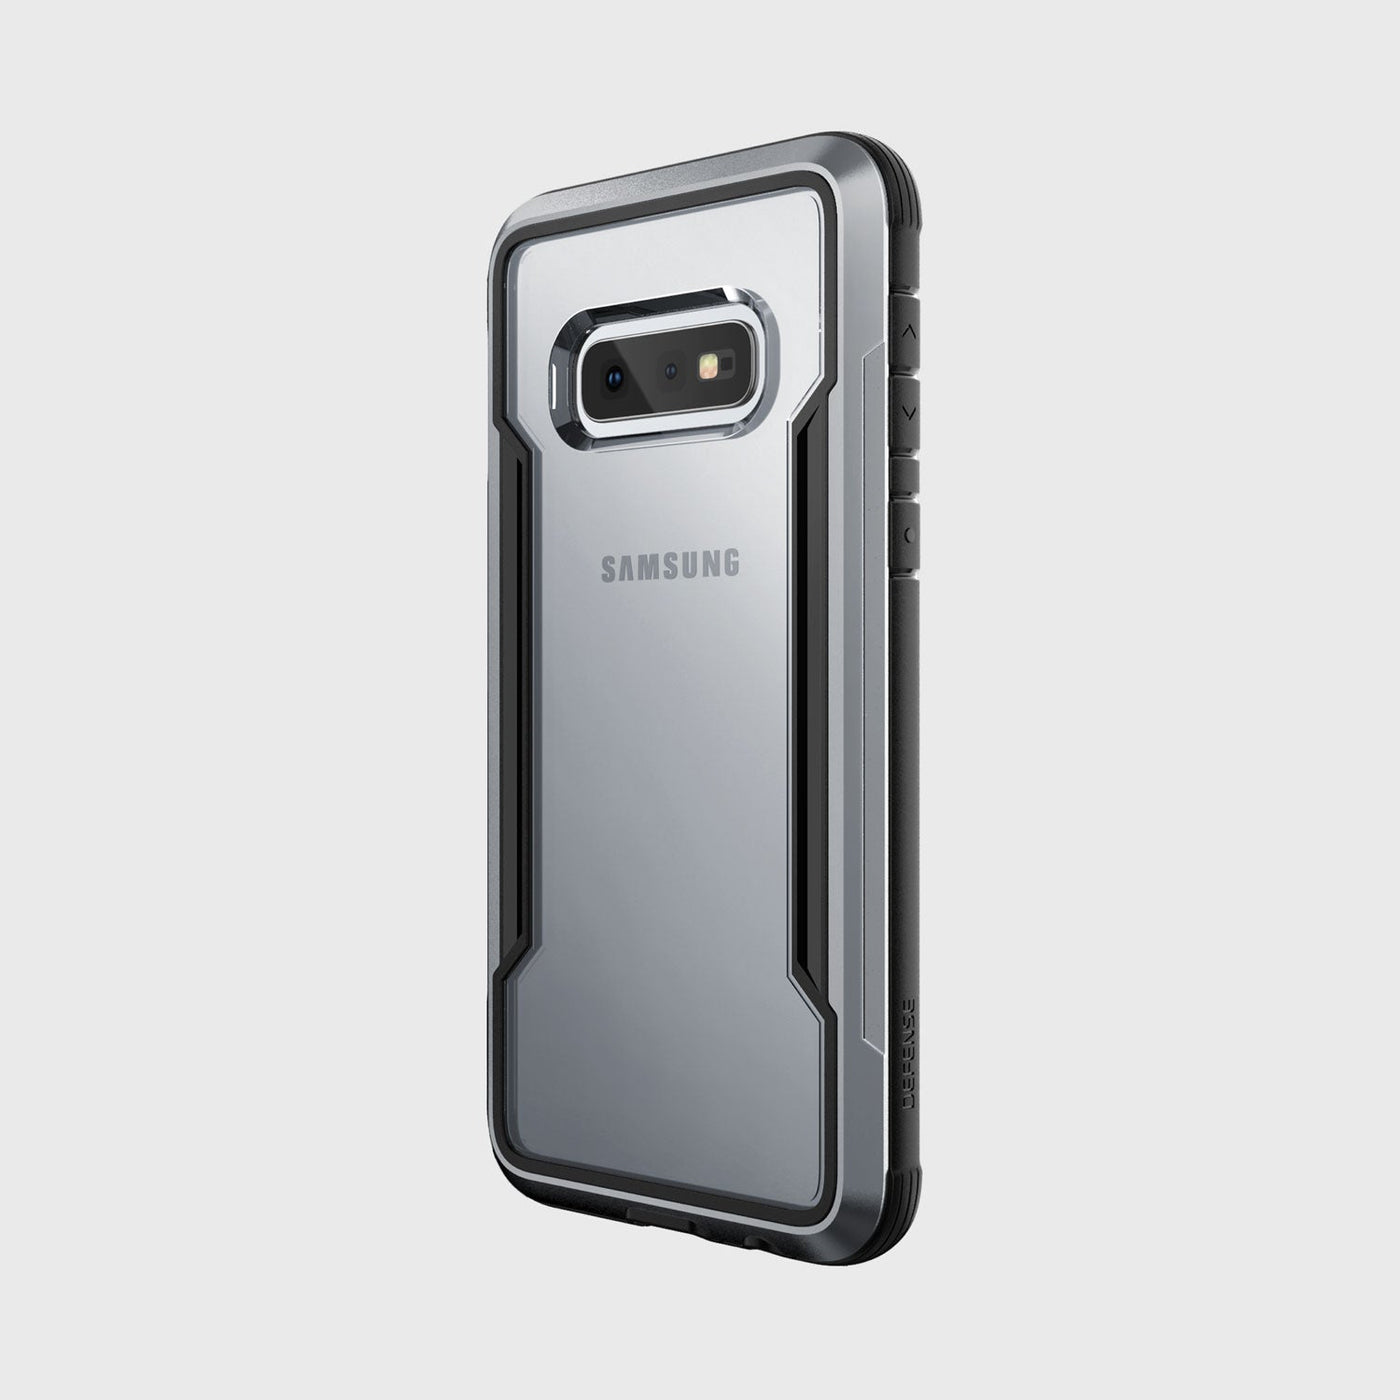 Samsung Galaxy S10e Case - SHIELD